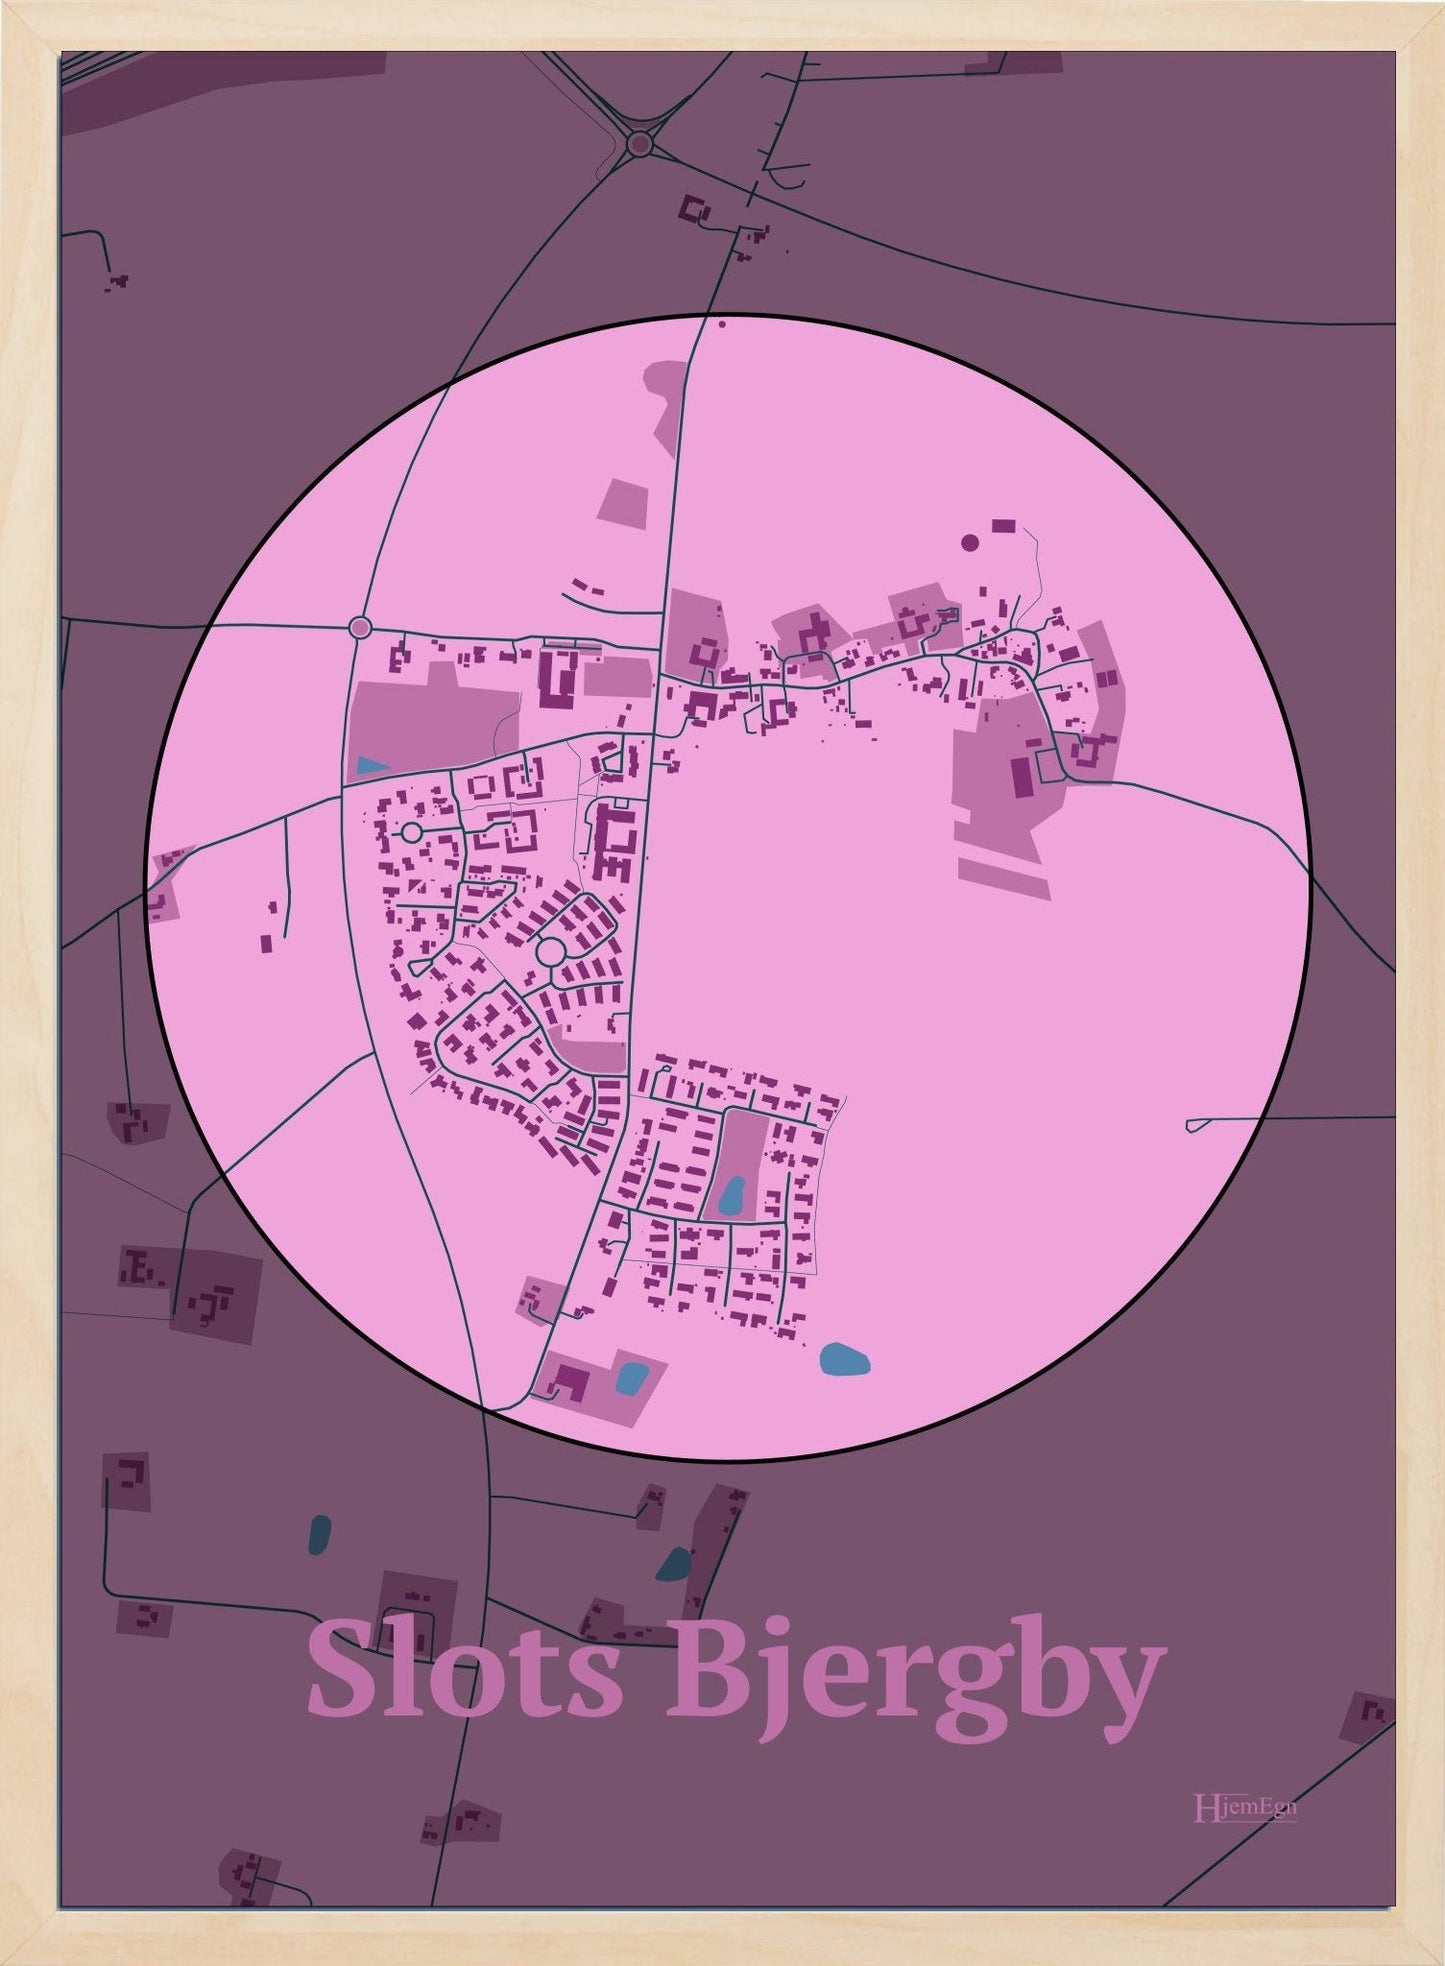 Slots Bjergby plakat i farve pastel rød og HjemEgn.dk design centrum. Design bykort for Slots Bjergby